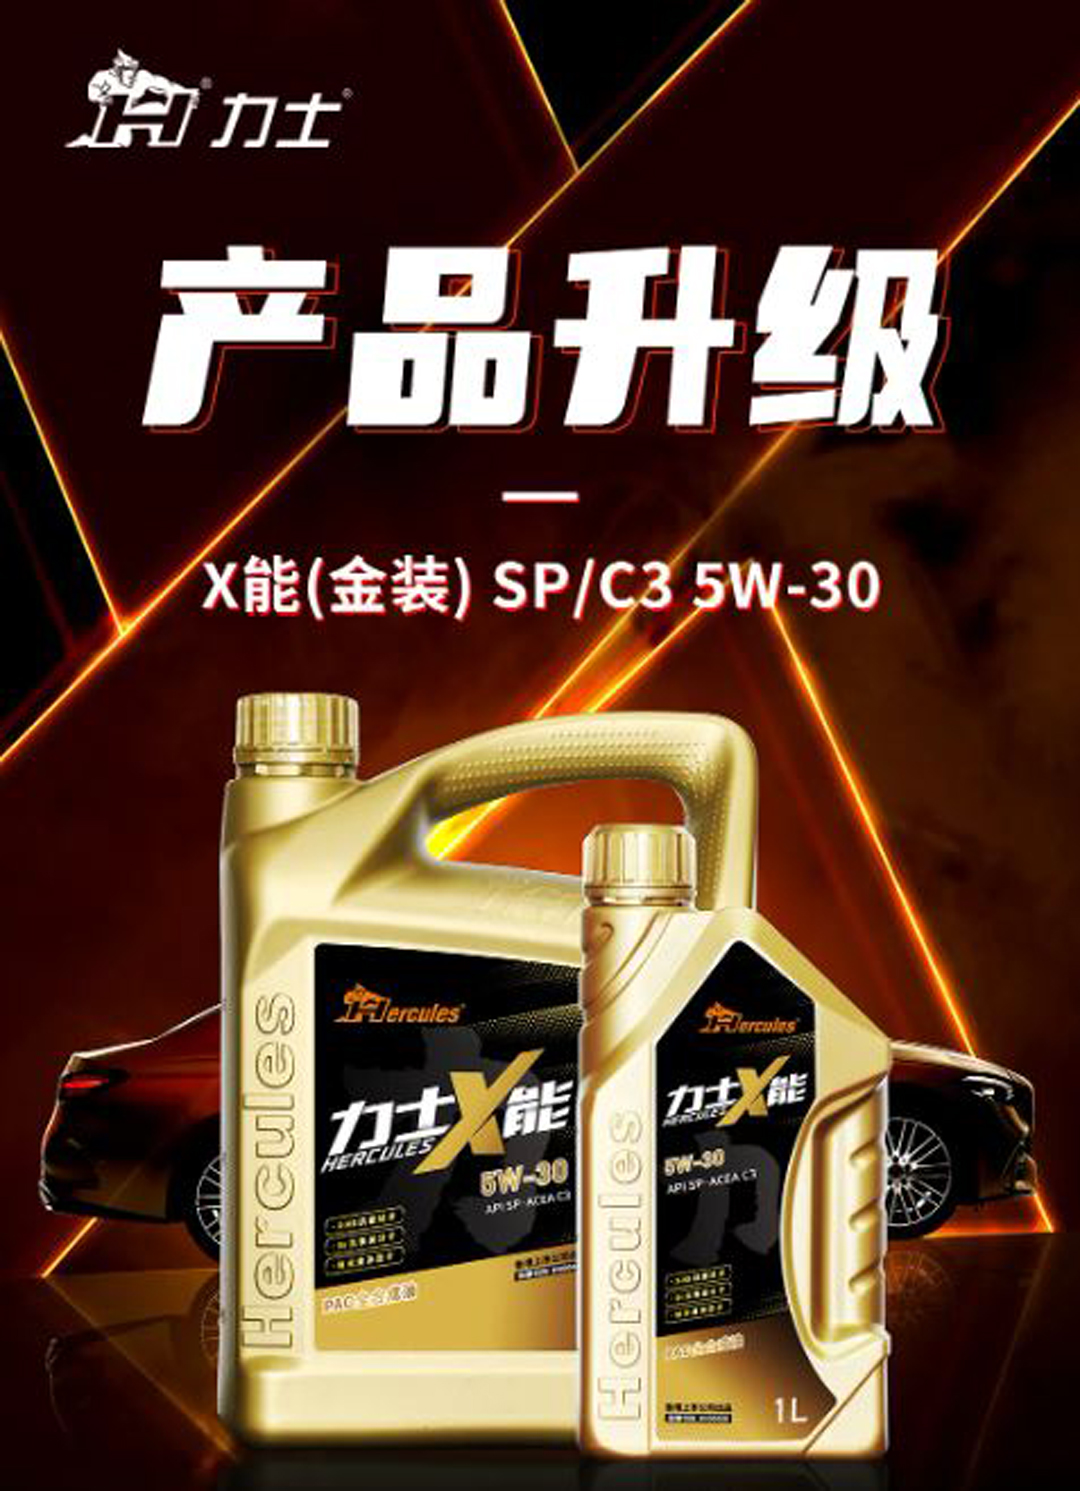 产品升级 | 力士X能（金装）5W-30升级SP/C3